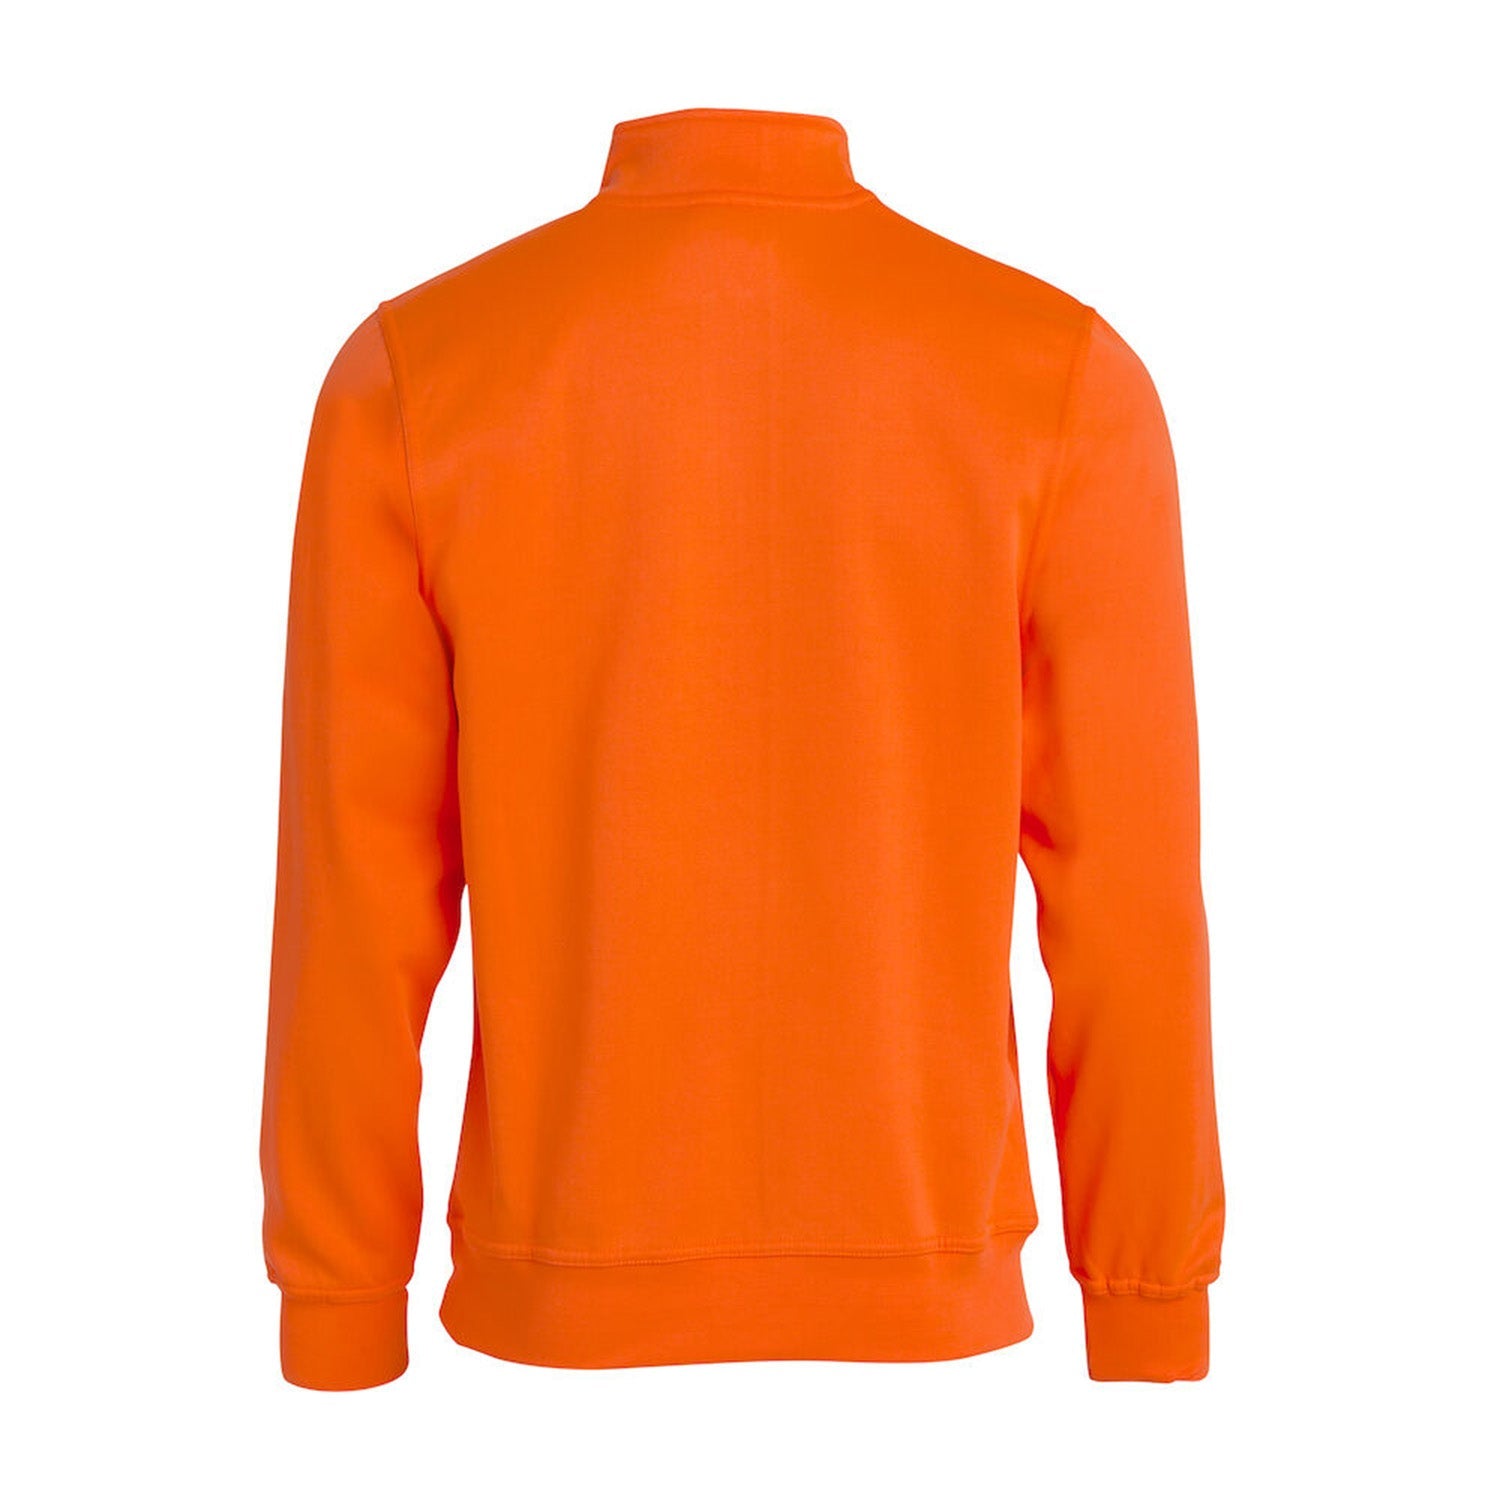 Clique Sweater met rits half zip - van Clique - Nu voor maar €27.95 bij Workwear 2 Day